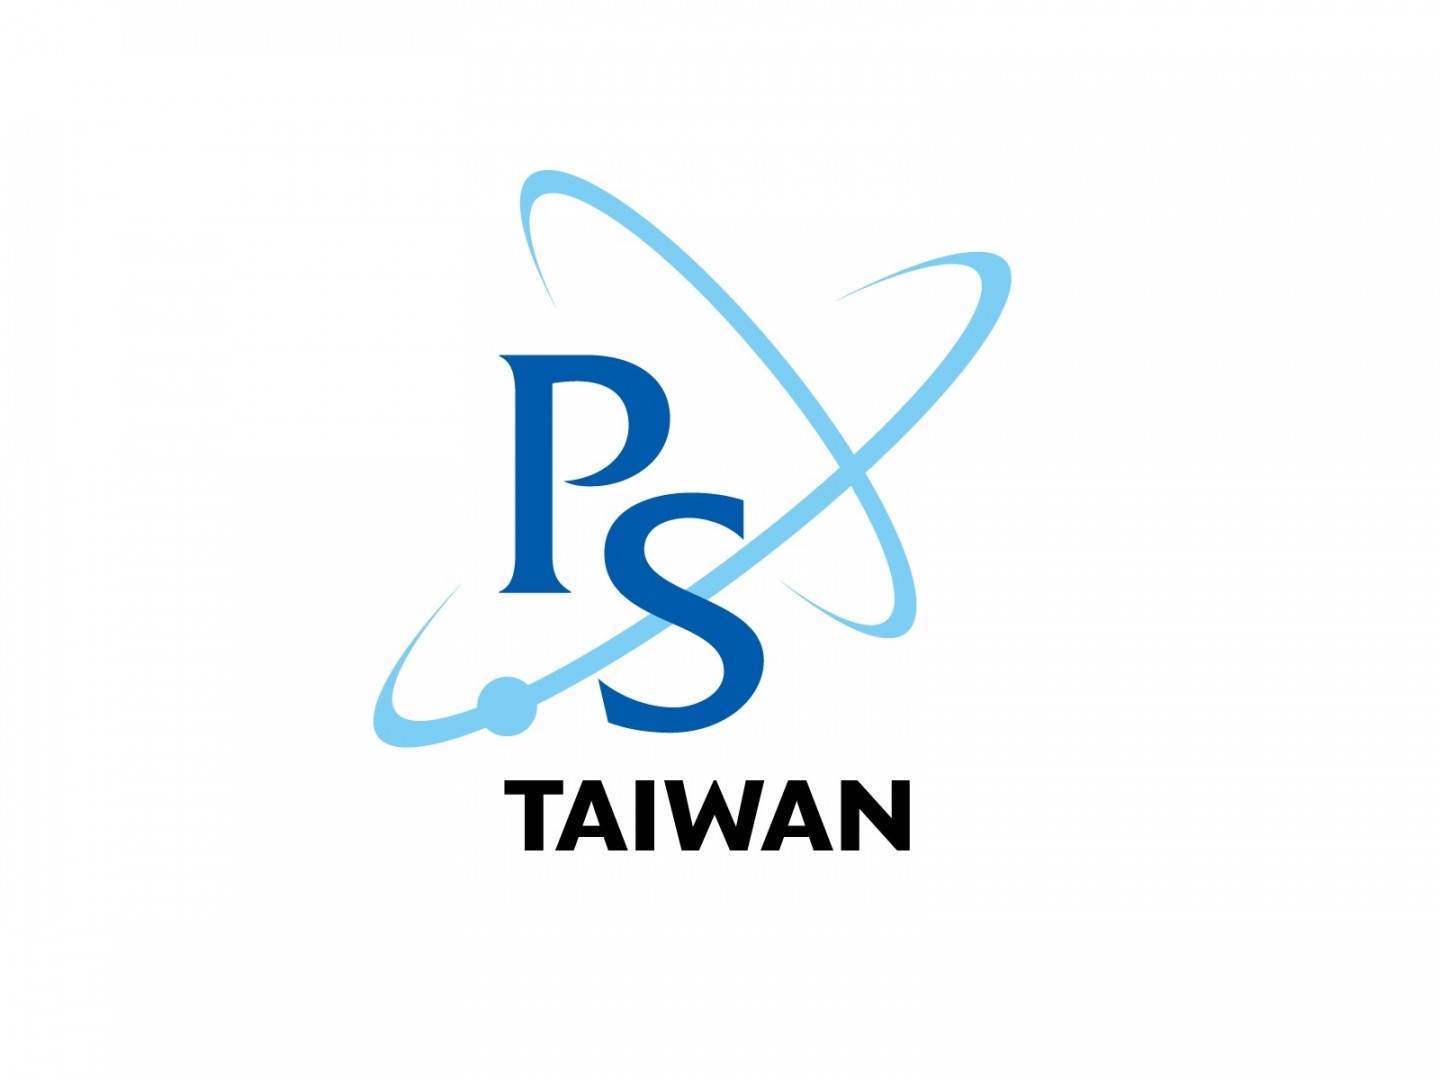  【台灣物理學會聲明】台灣物理學會強烈譴責俄羅斯對烏克蘭的侵略行為 